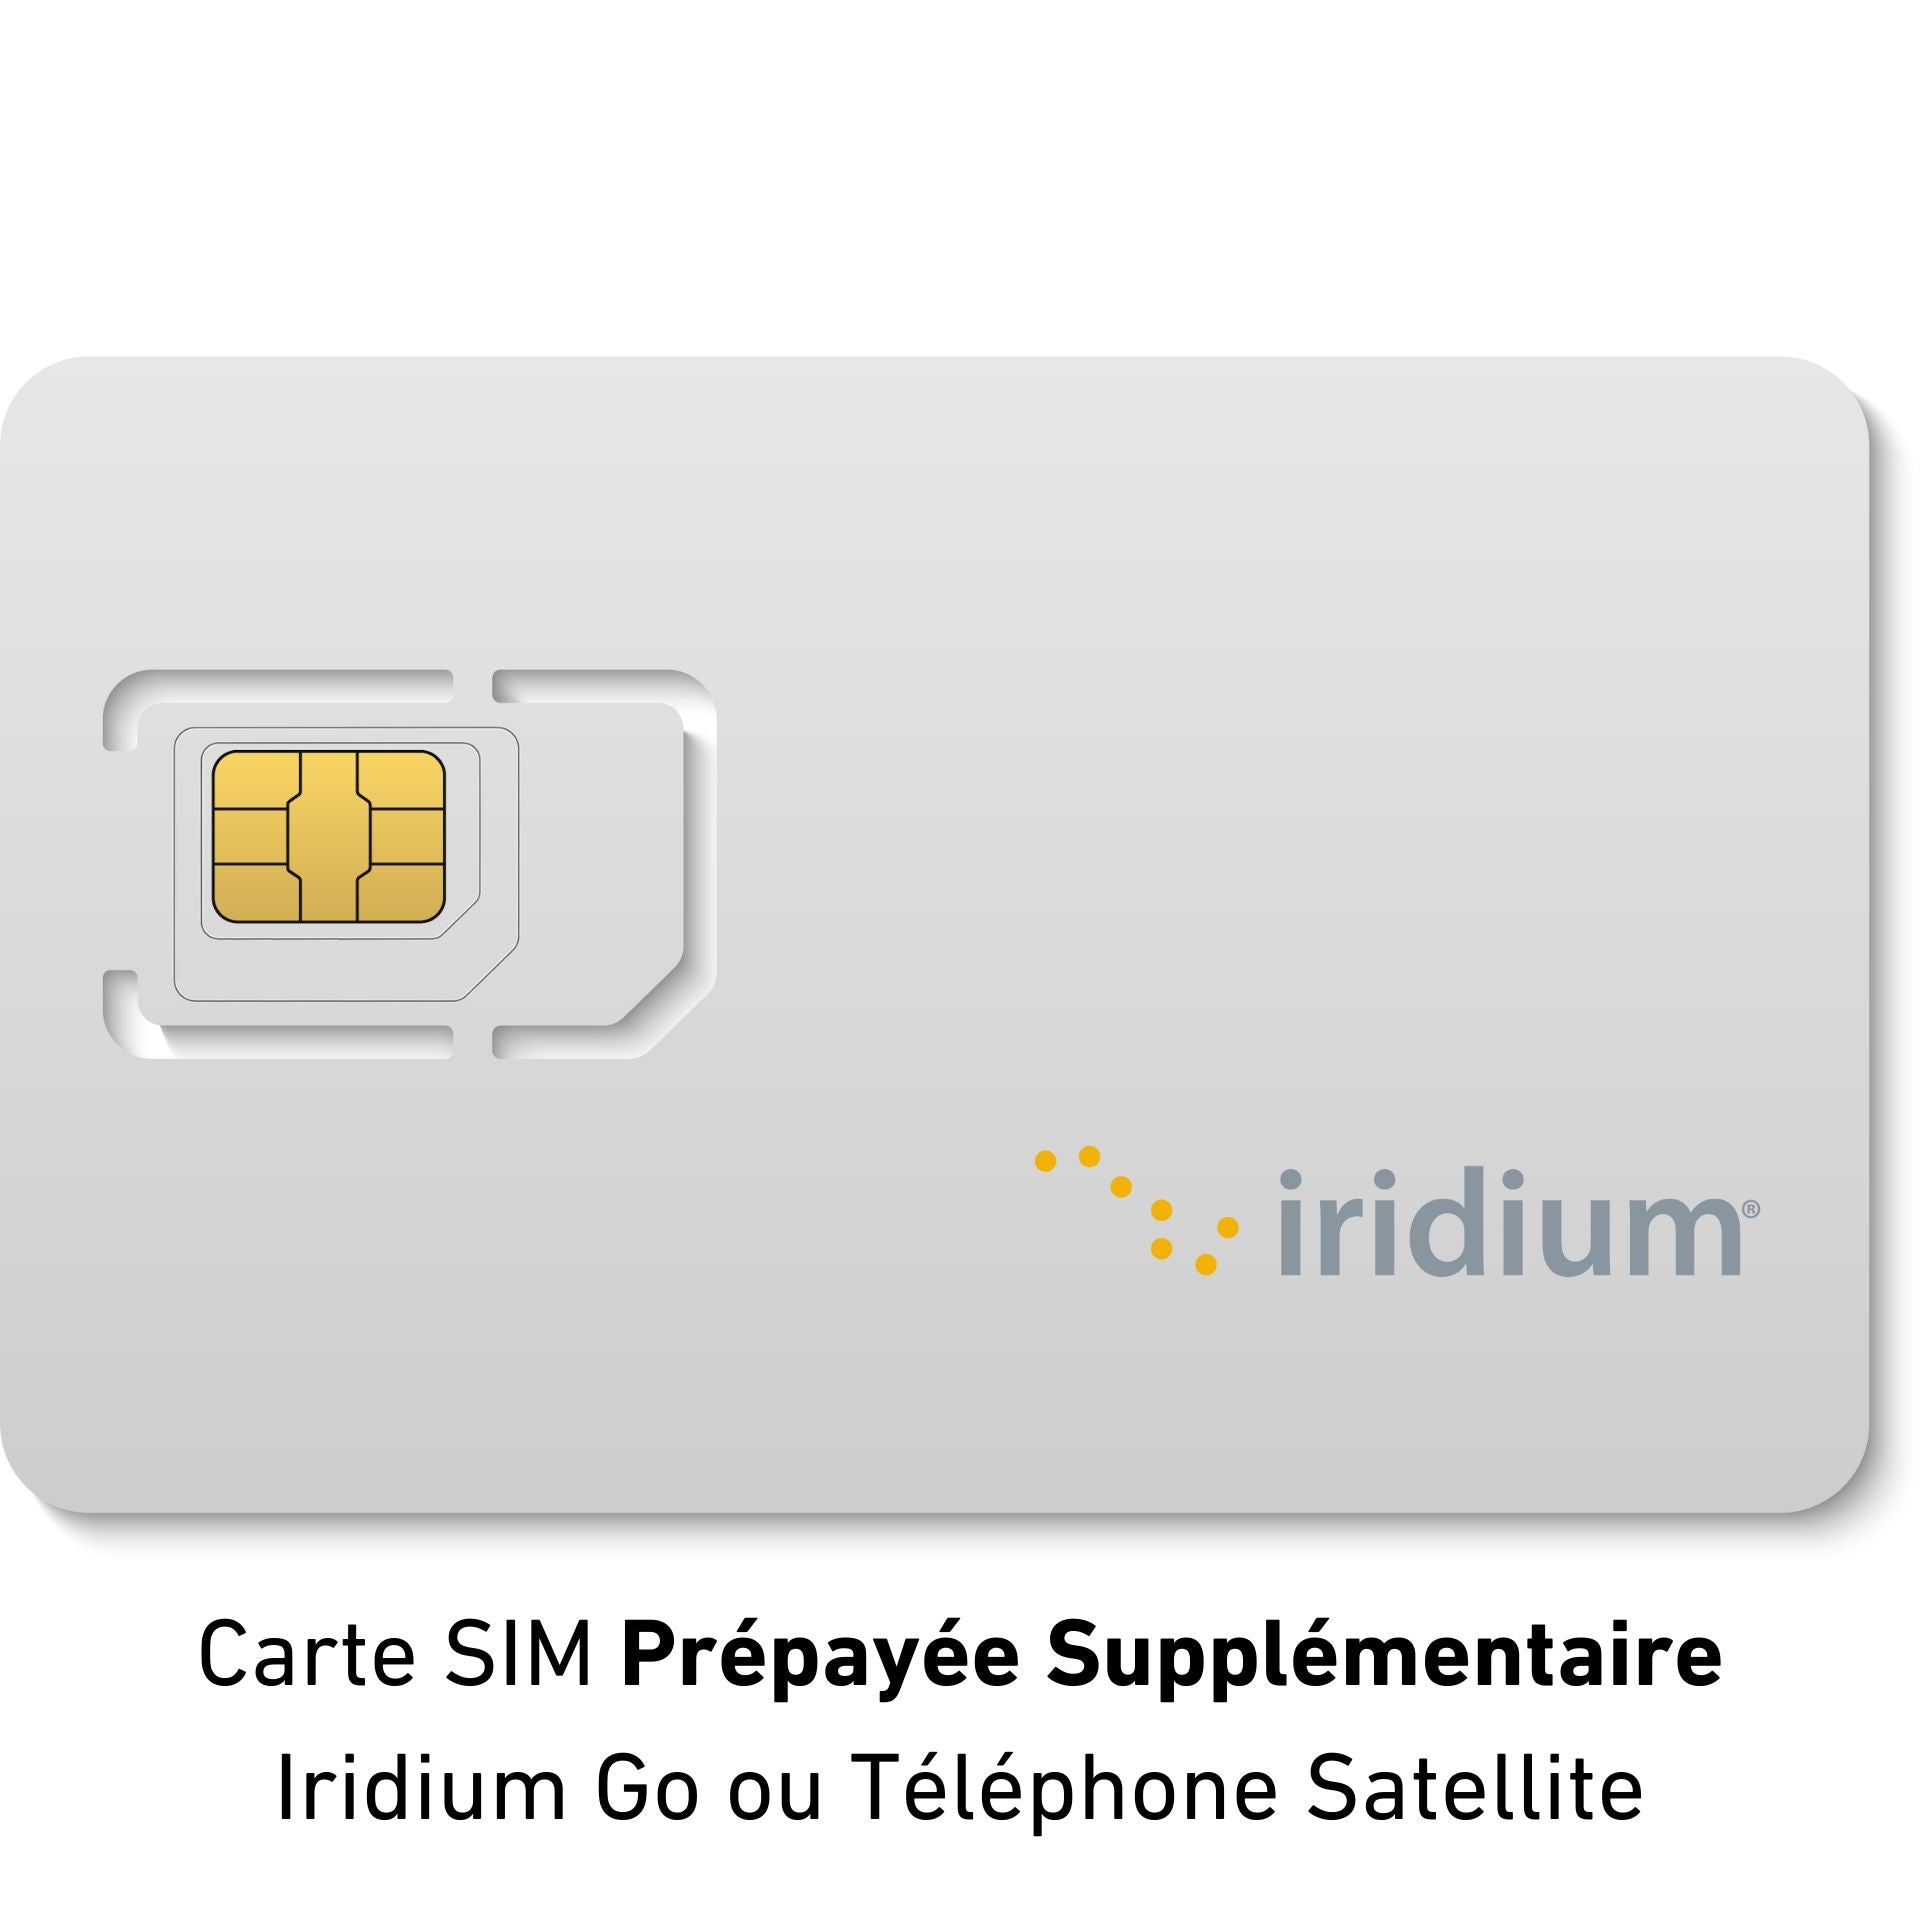 Carte SIM IRIDIUM Supplémentaire